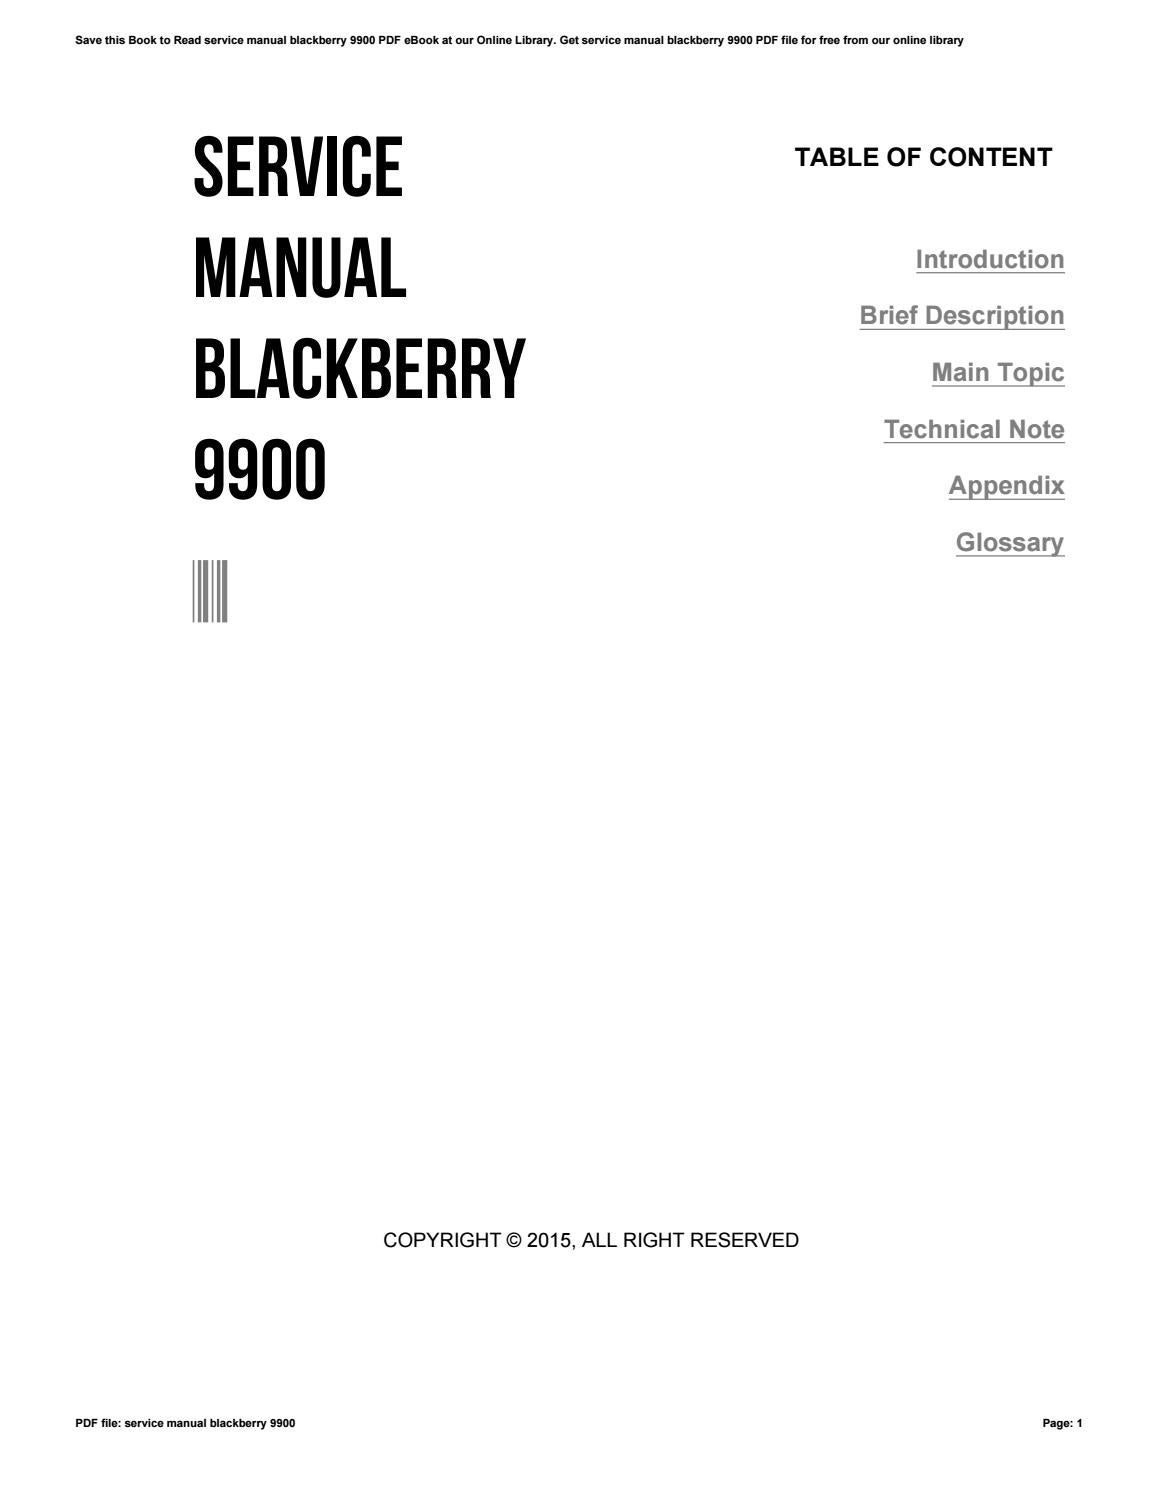 service book information nicht gefühlt blackberry 9900